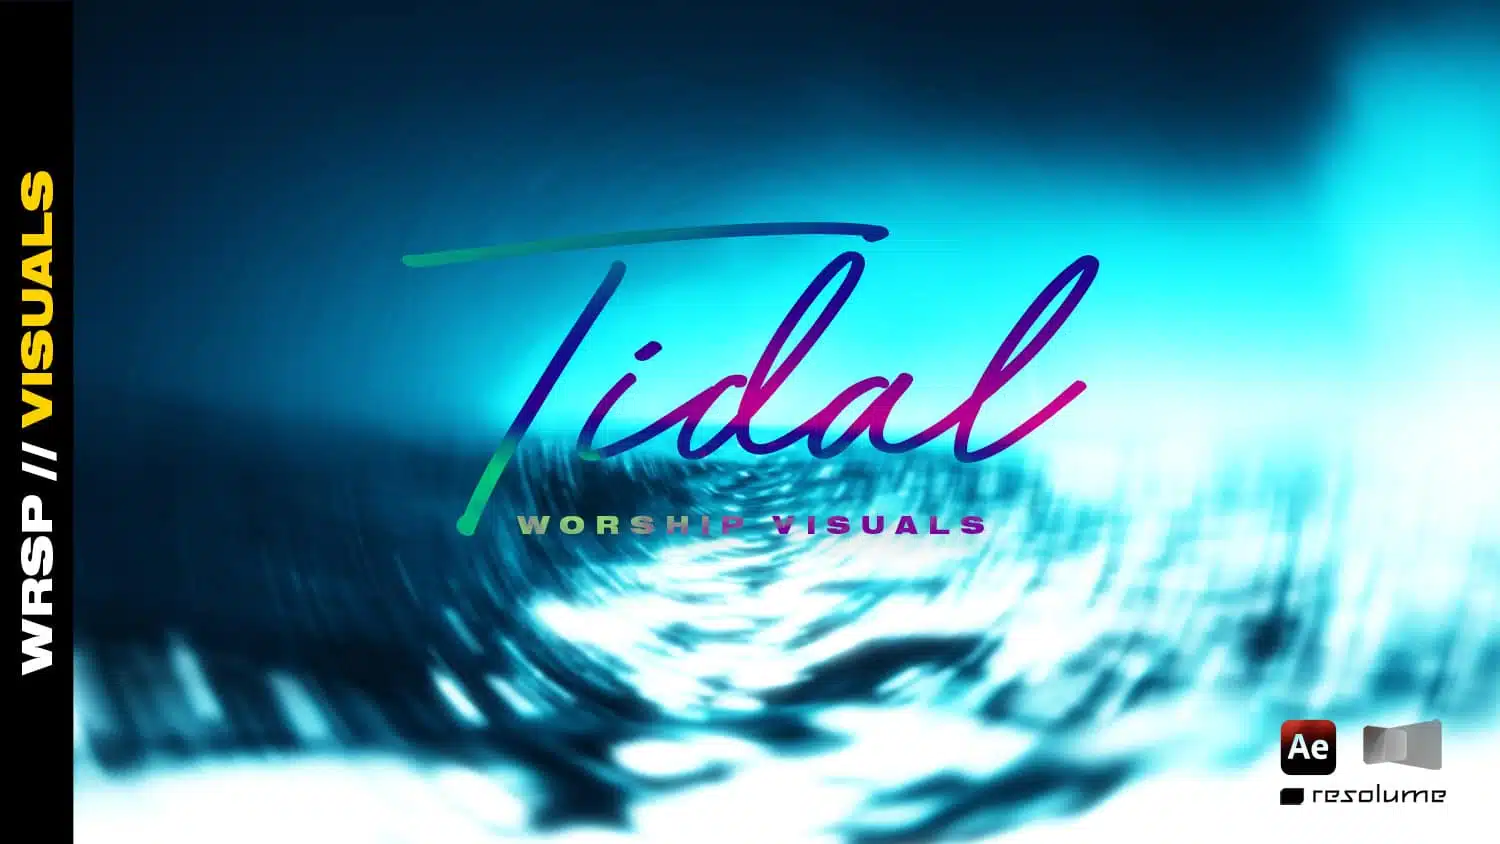 tidal worship visuals